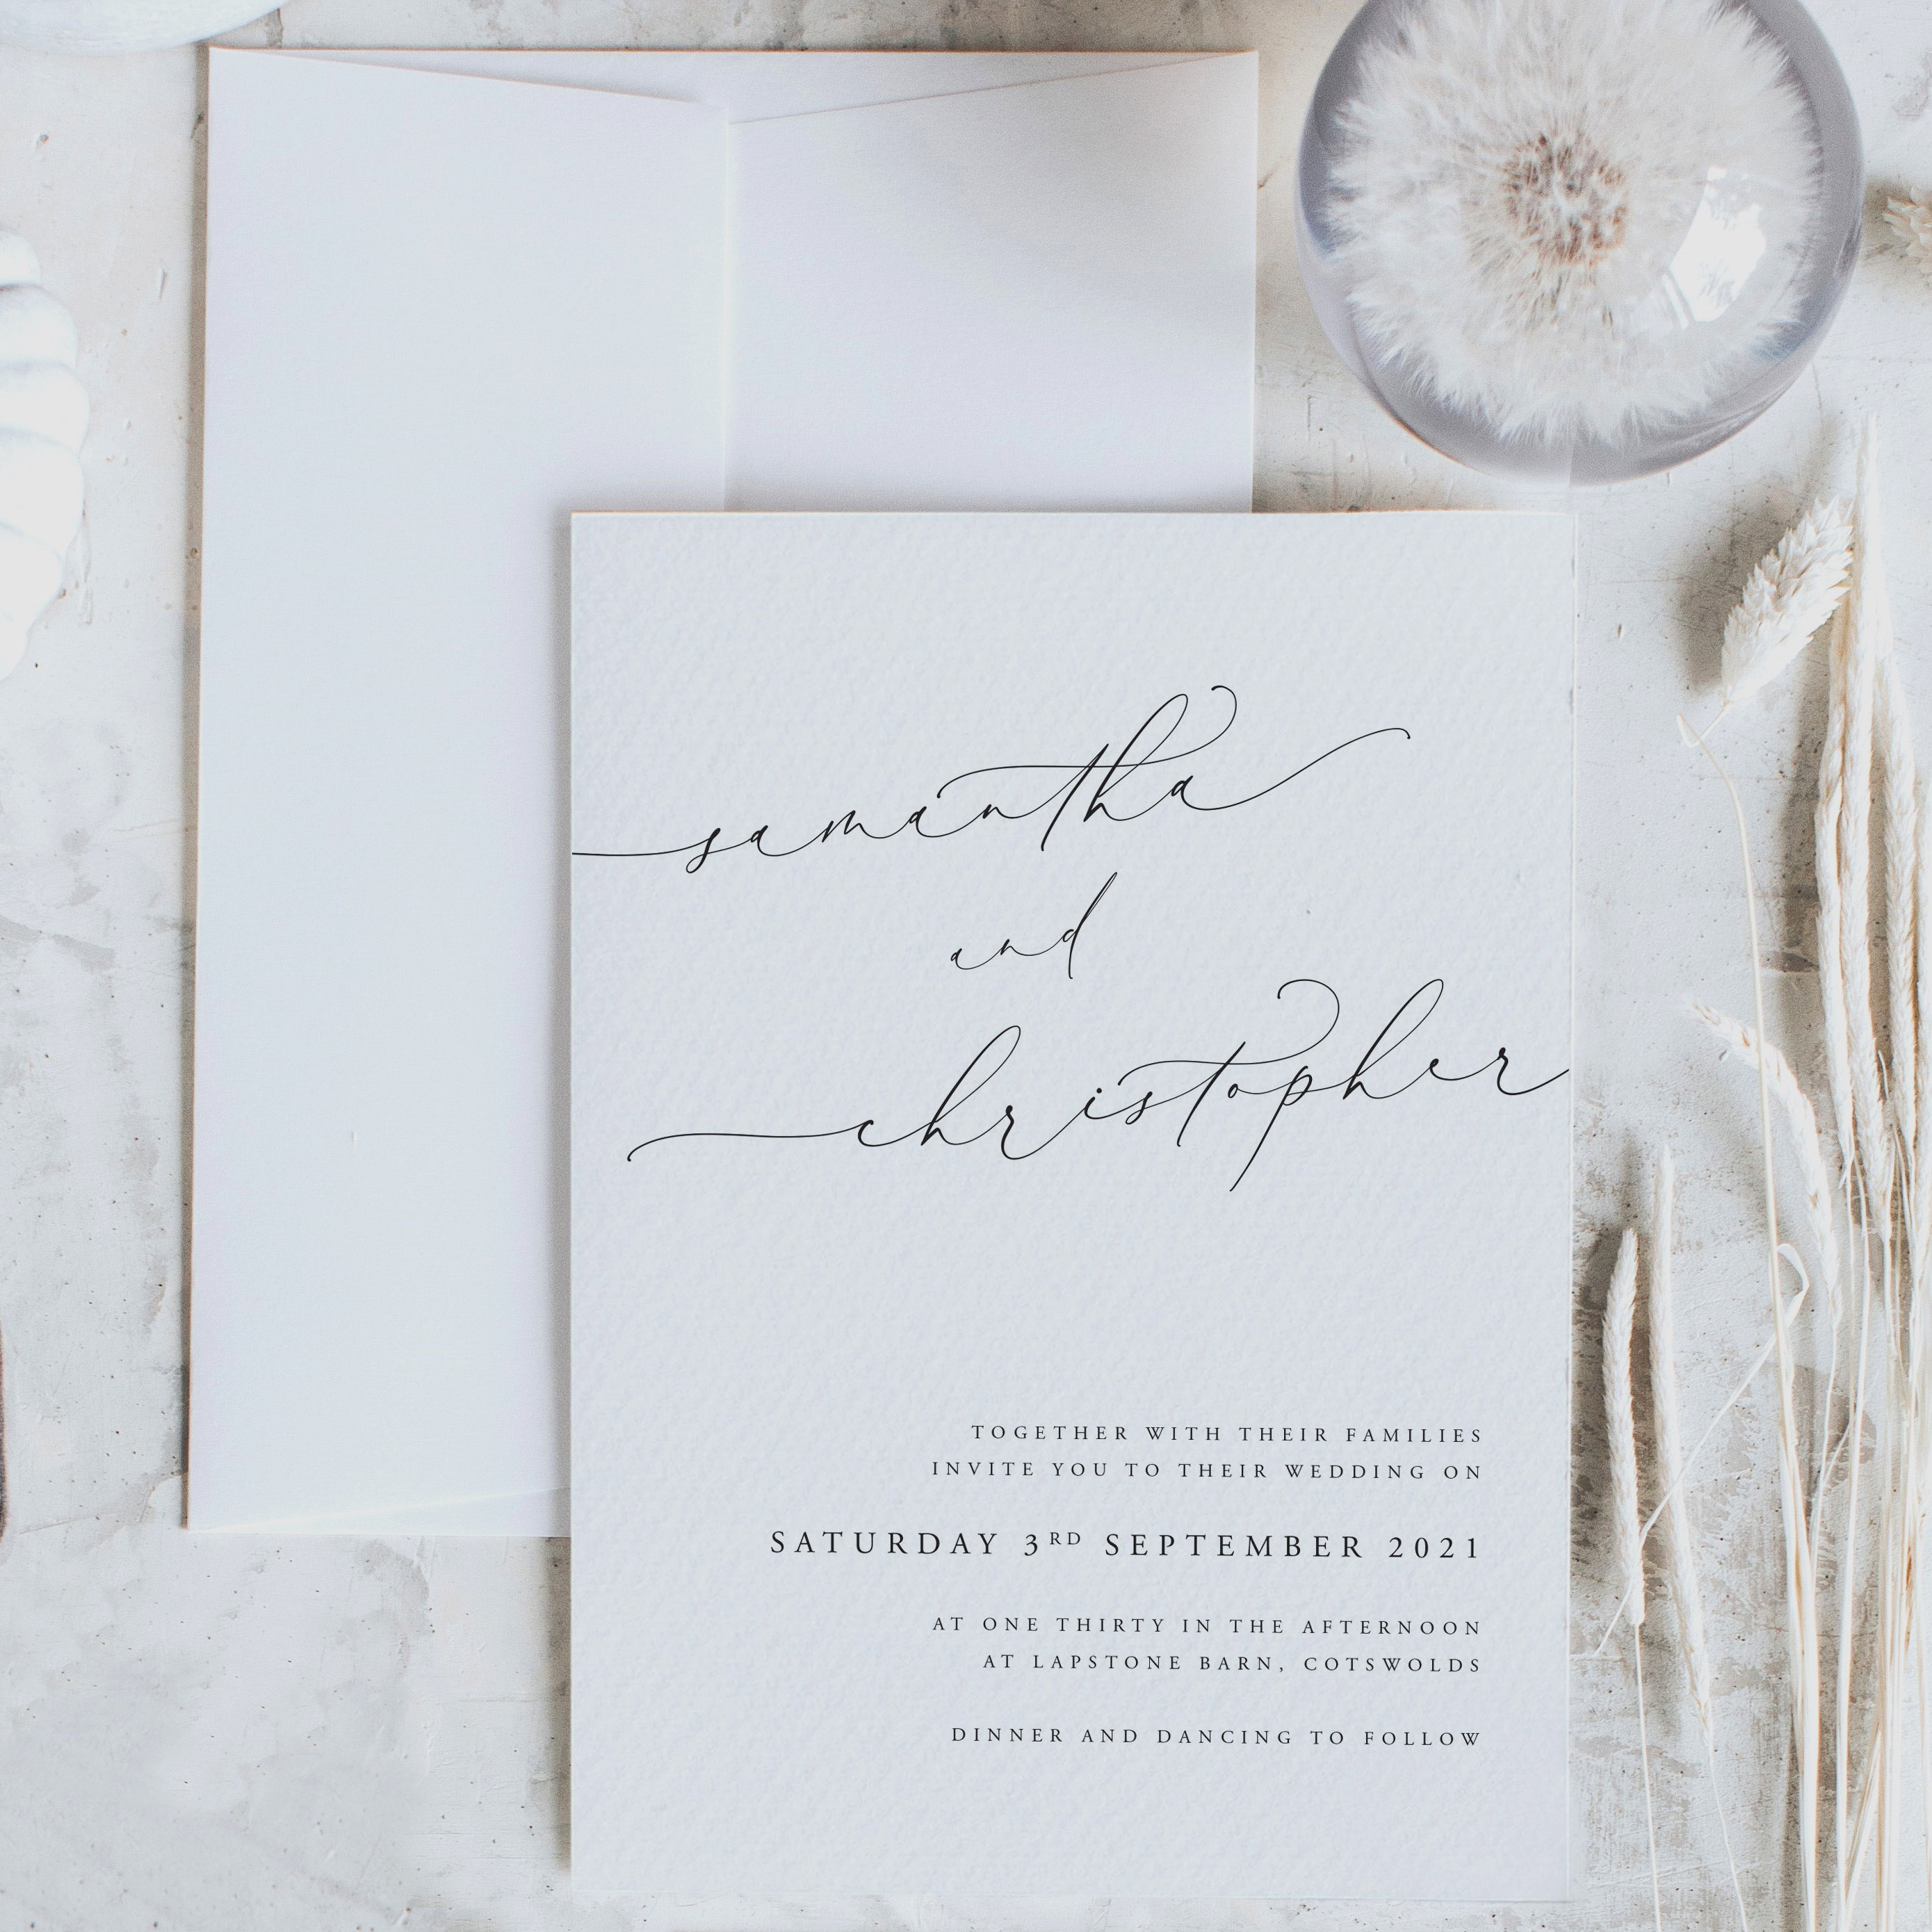 Unique Wedding Invitations. Elegant Simple White & Black Invites